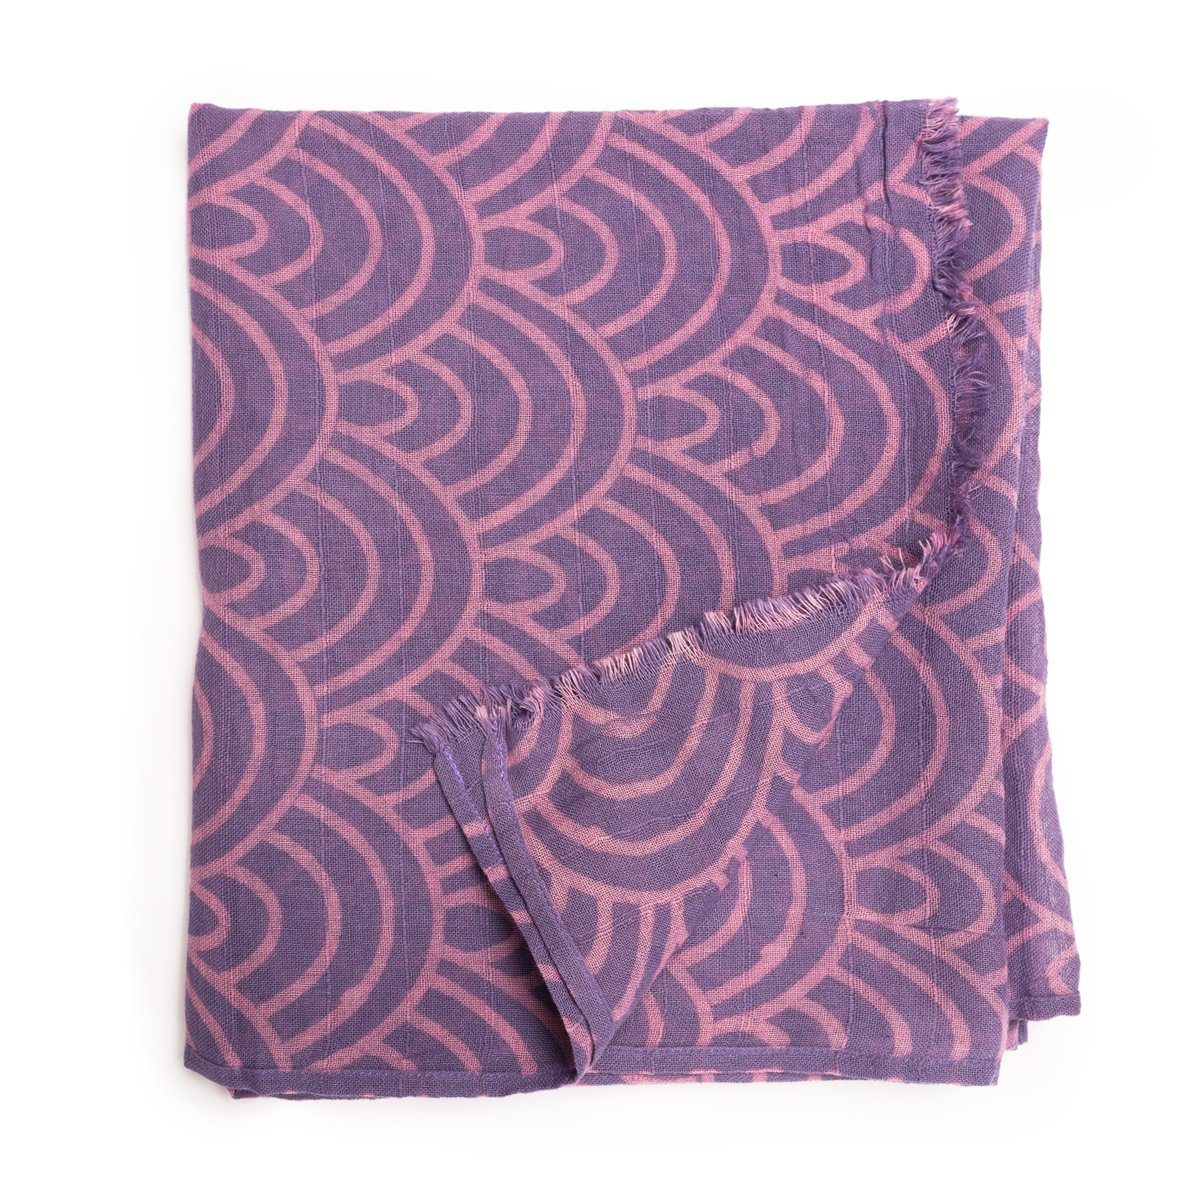 PANASIAM Halstuch elegantes Schaltuch auch als Schultertuch Schal oder Stola tragbar, in schönen farbigen Designs mit kleinen Fransen aus Baumwolle Violett Seigaiha